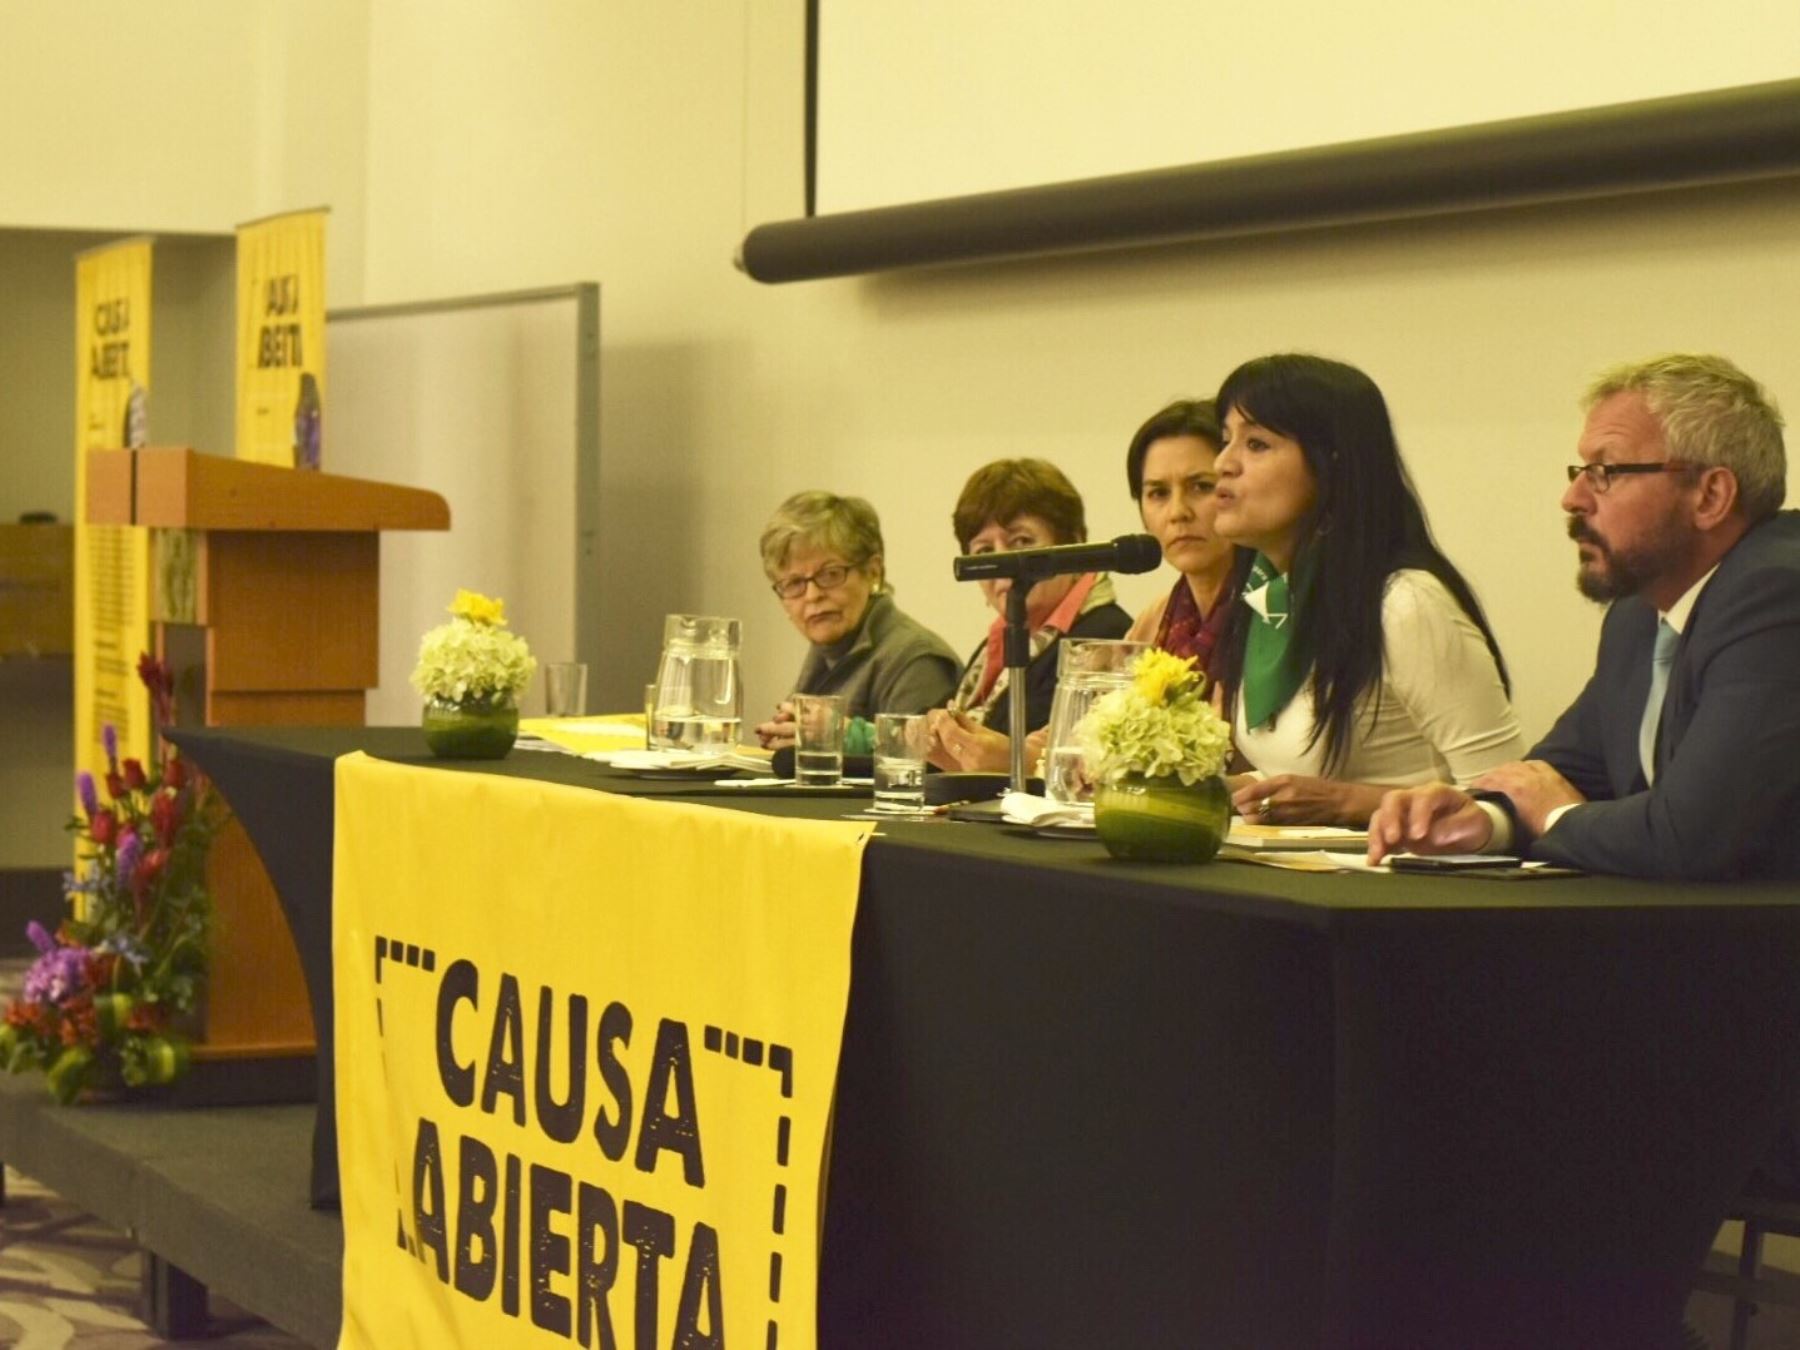 Avances y políticas pendientes a favor de la mujer analizan representantes de diversas organizaciones feministas de América latina y El Caribe.